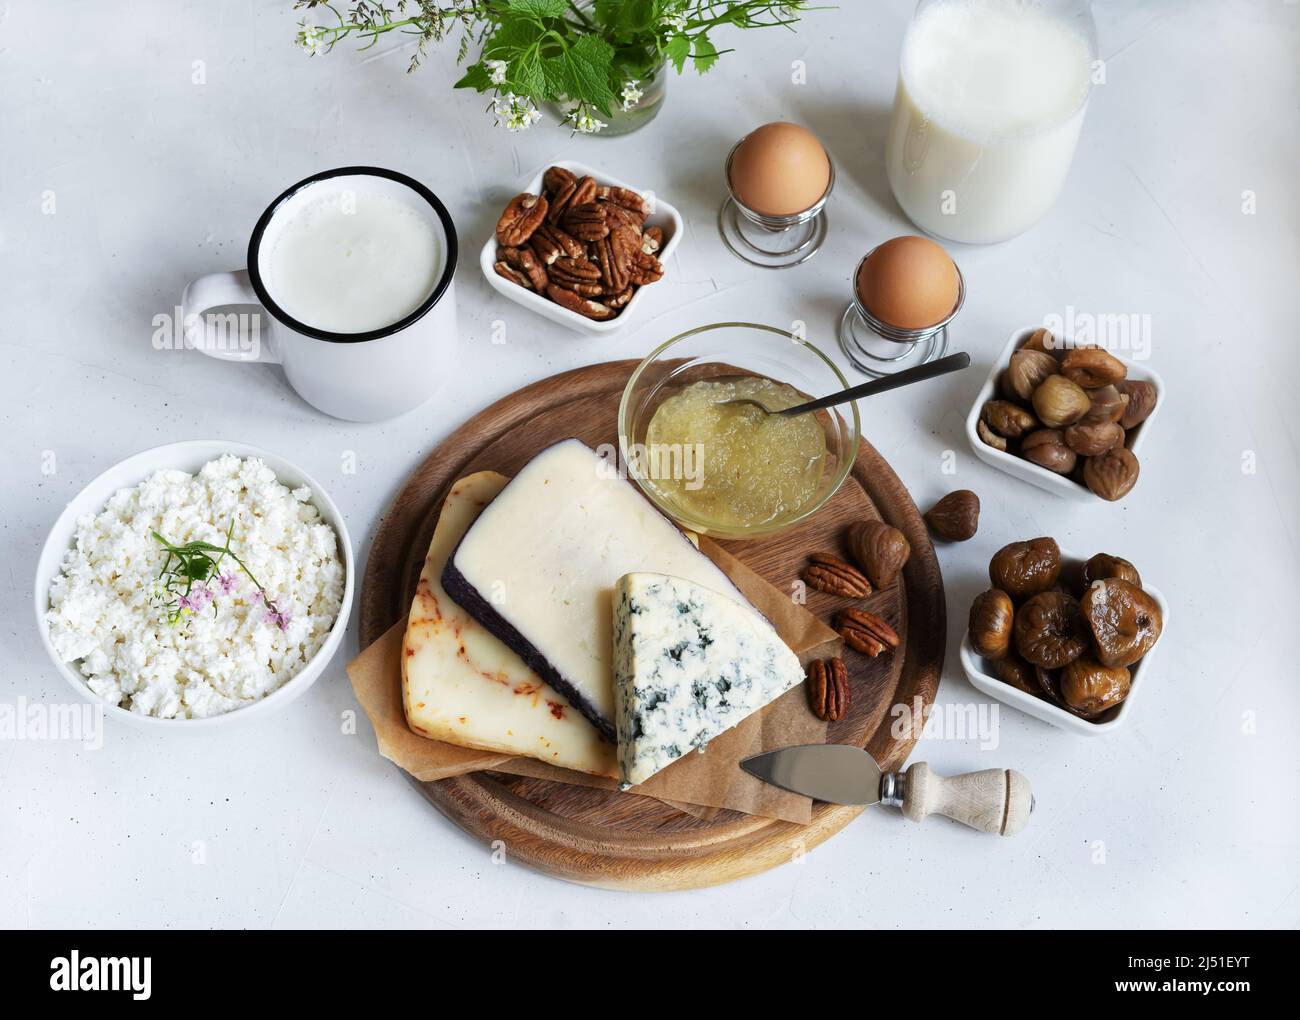 Käseplatte mit Birnensauce, Milchglas, Kefir, Quark, Nüsse auf dem hellen Hintergrund Stockfoto